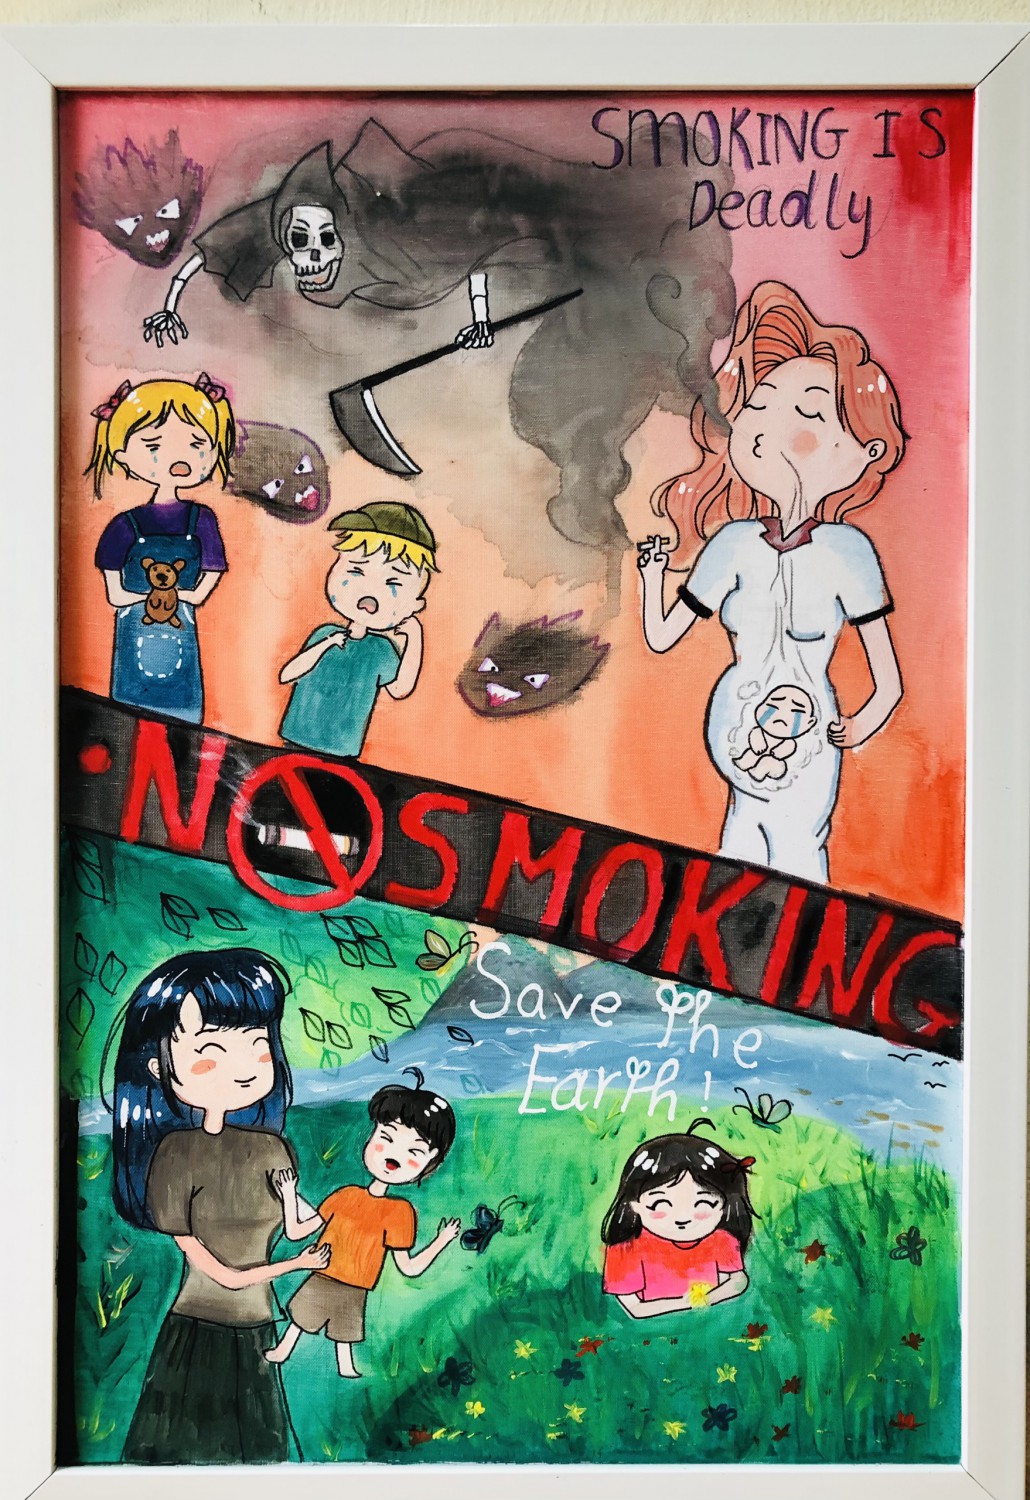 Cuộc thi vẽ tranh phòng chống tác hại của thuốc lá với chủ đề Thế giới  không khói thuốc  SmokeFree word  THCS Đồng Mai